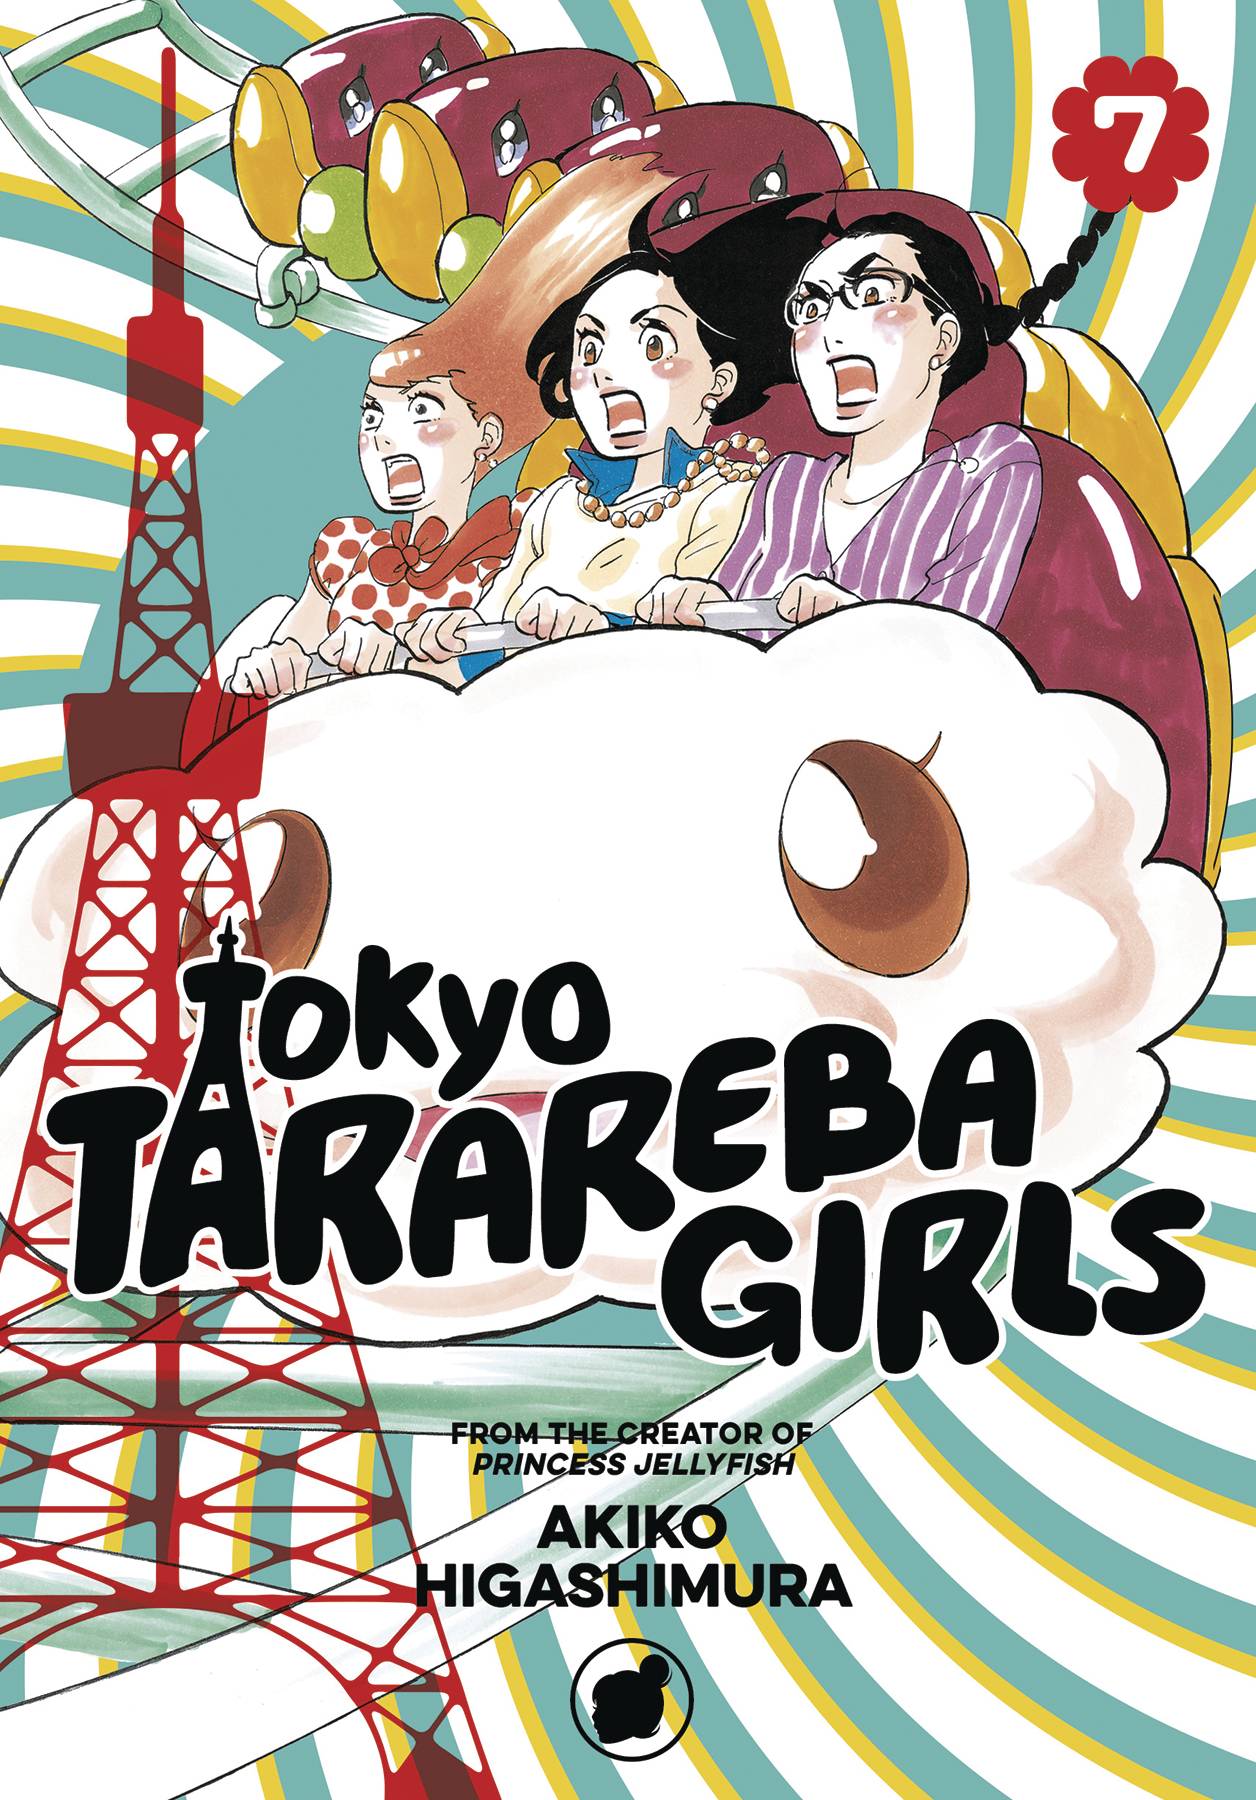 Tokyo Tarareba Girls Manga Volume 7 (Of 9)